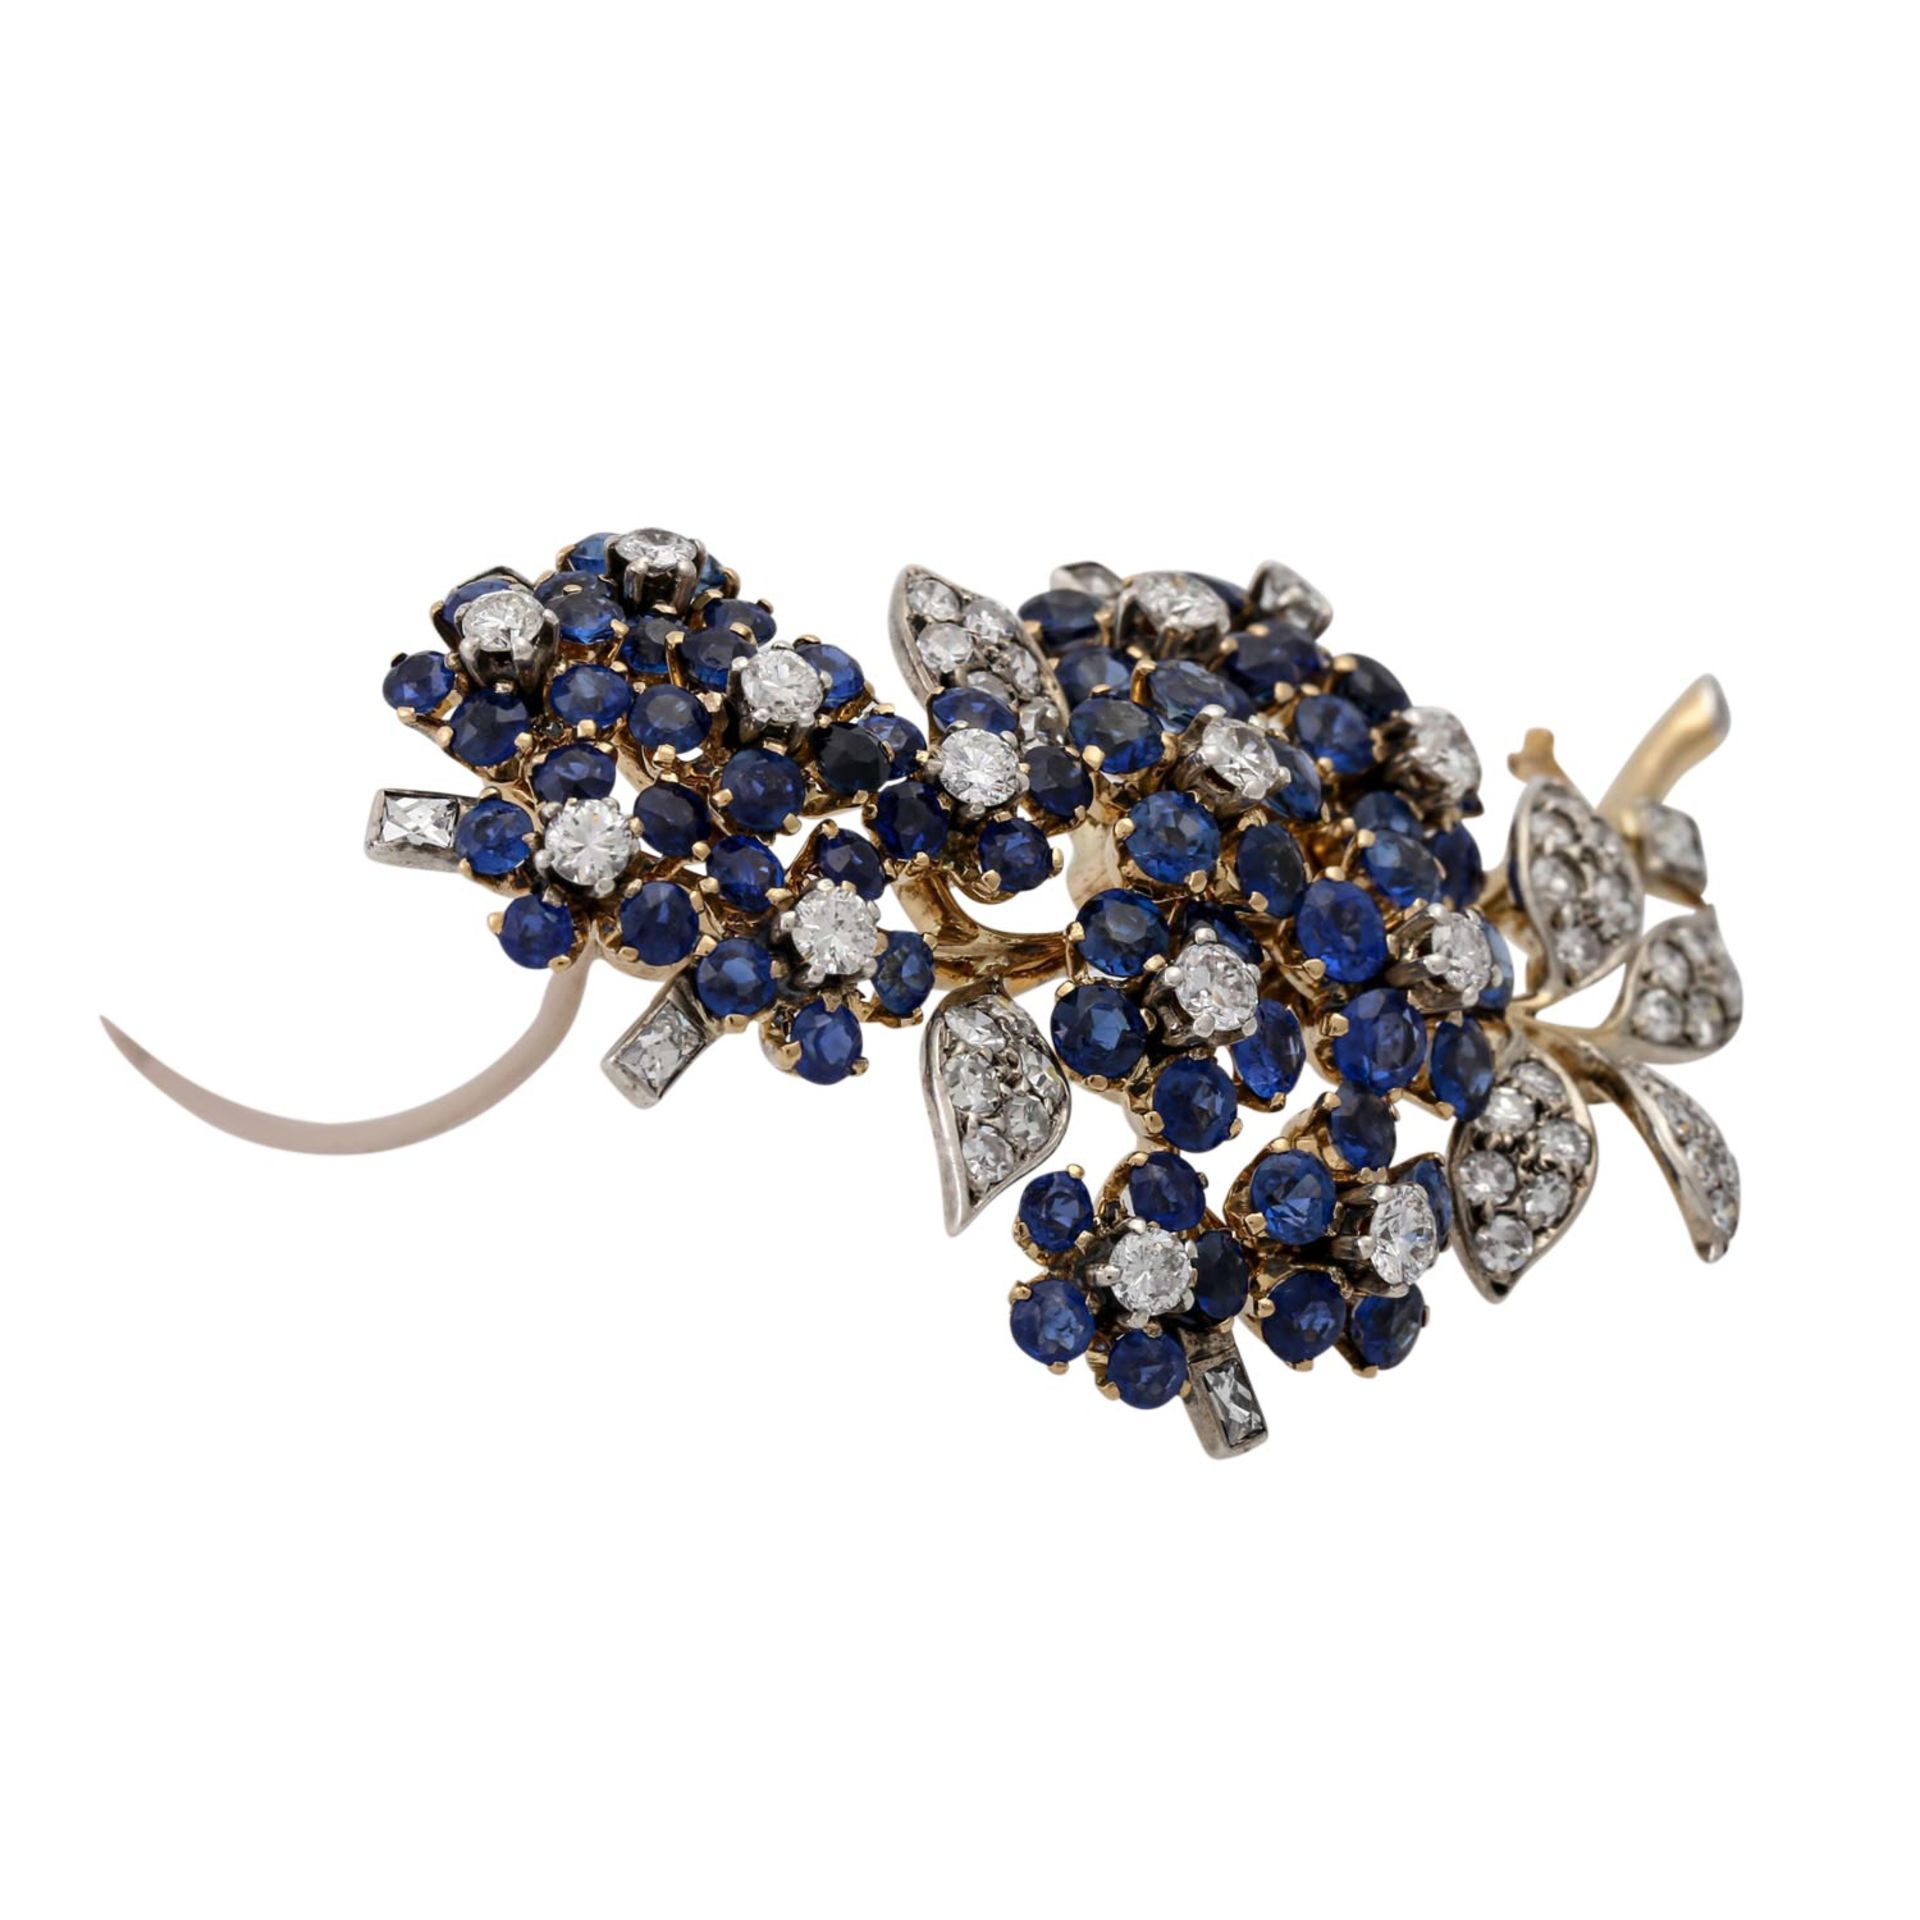 Feine Juwelenbrosche mit Saphiren und Diamanten,WBW (2013): 20.300 €, detailreiche B - Bild 2 aus 5